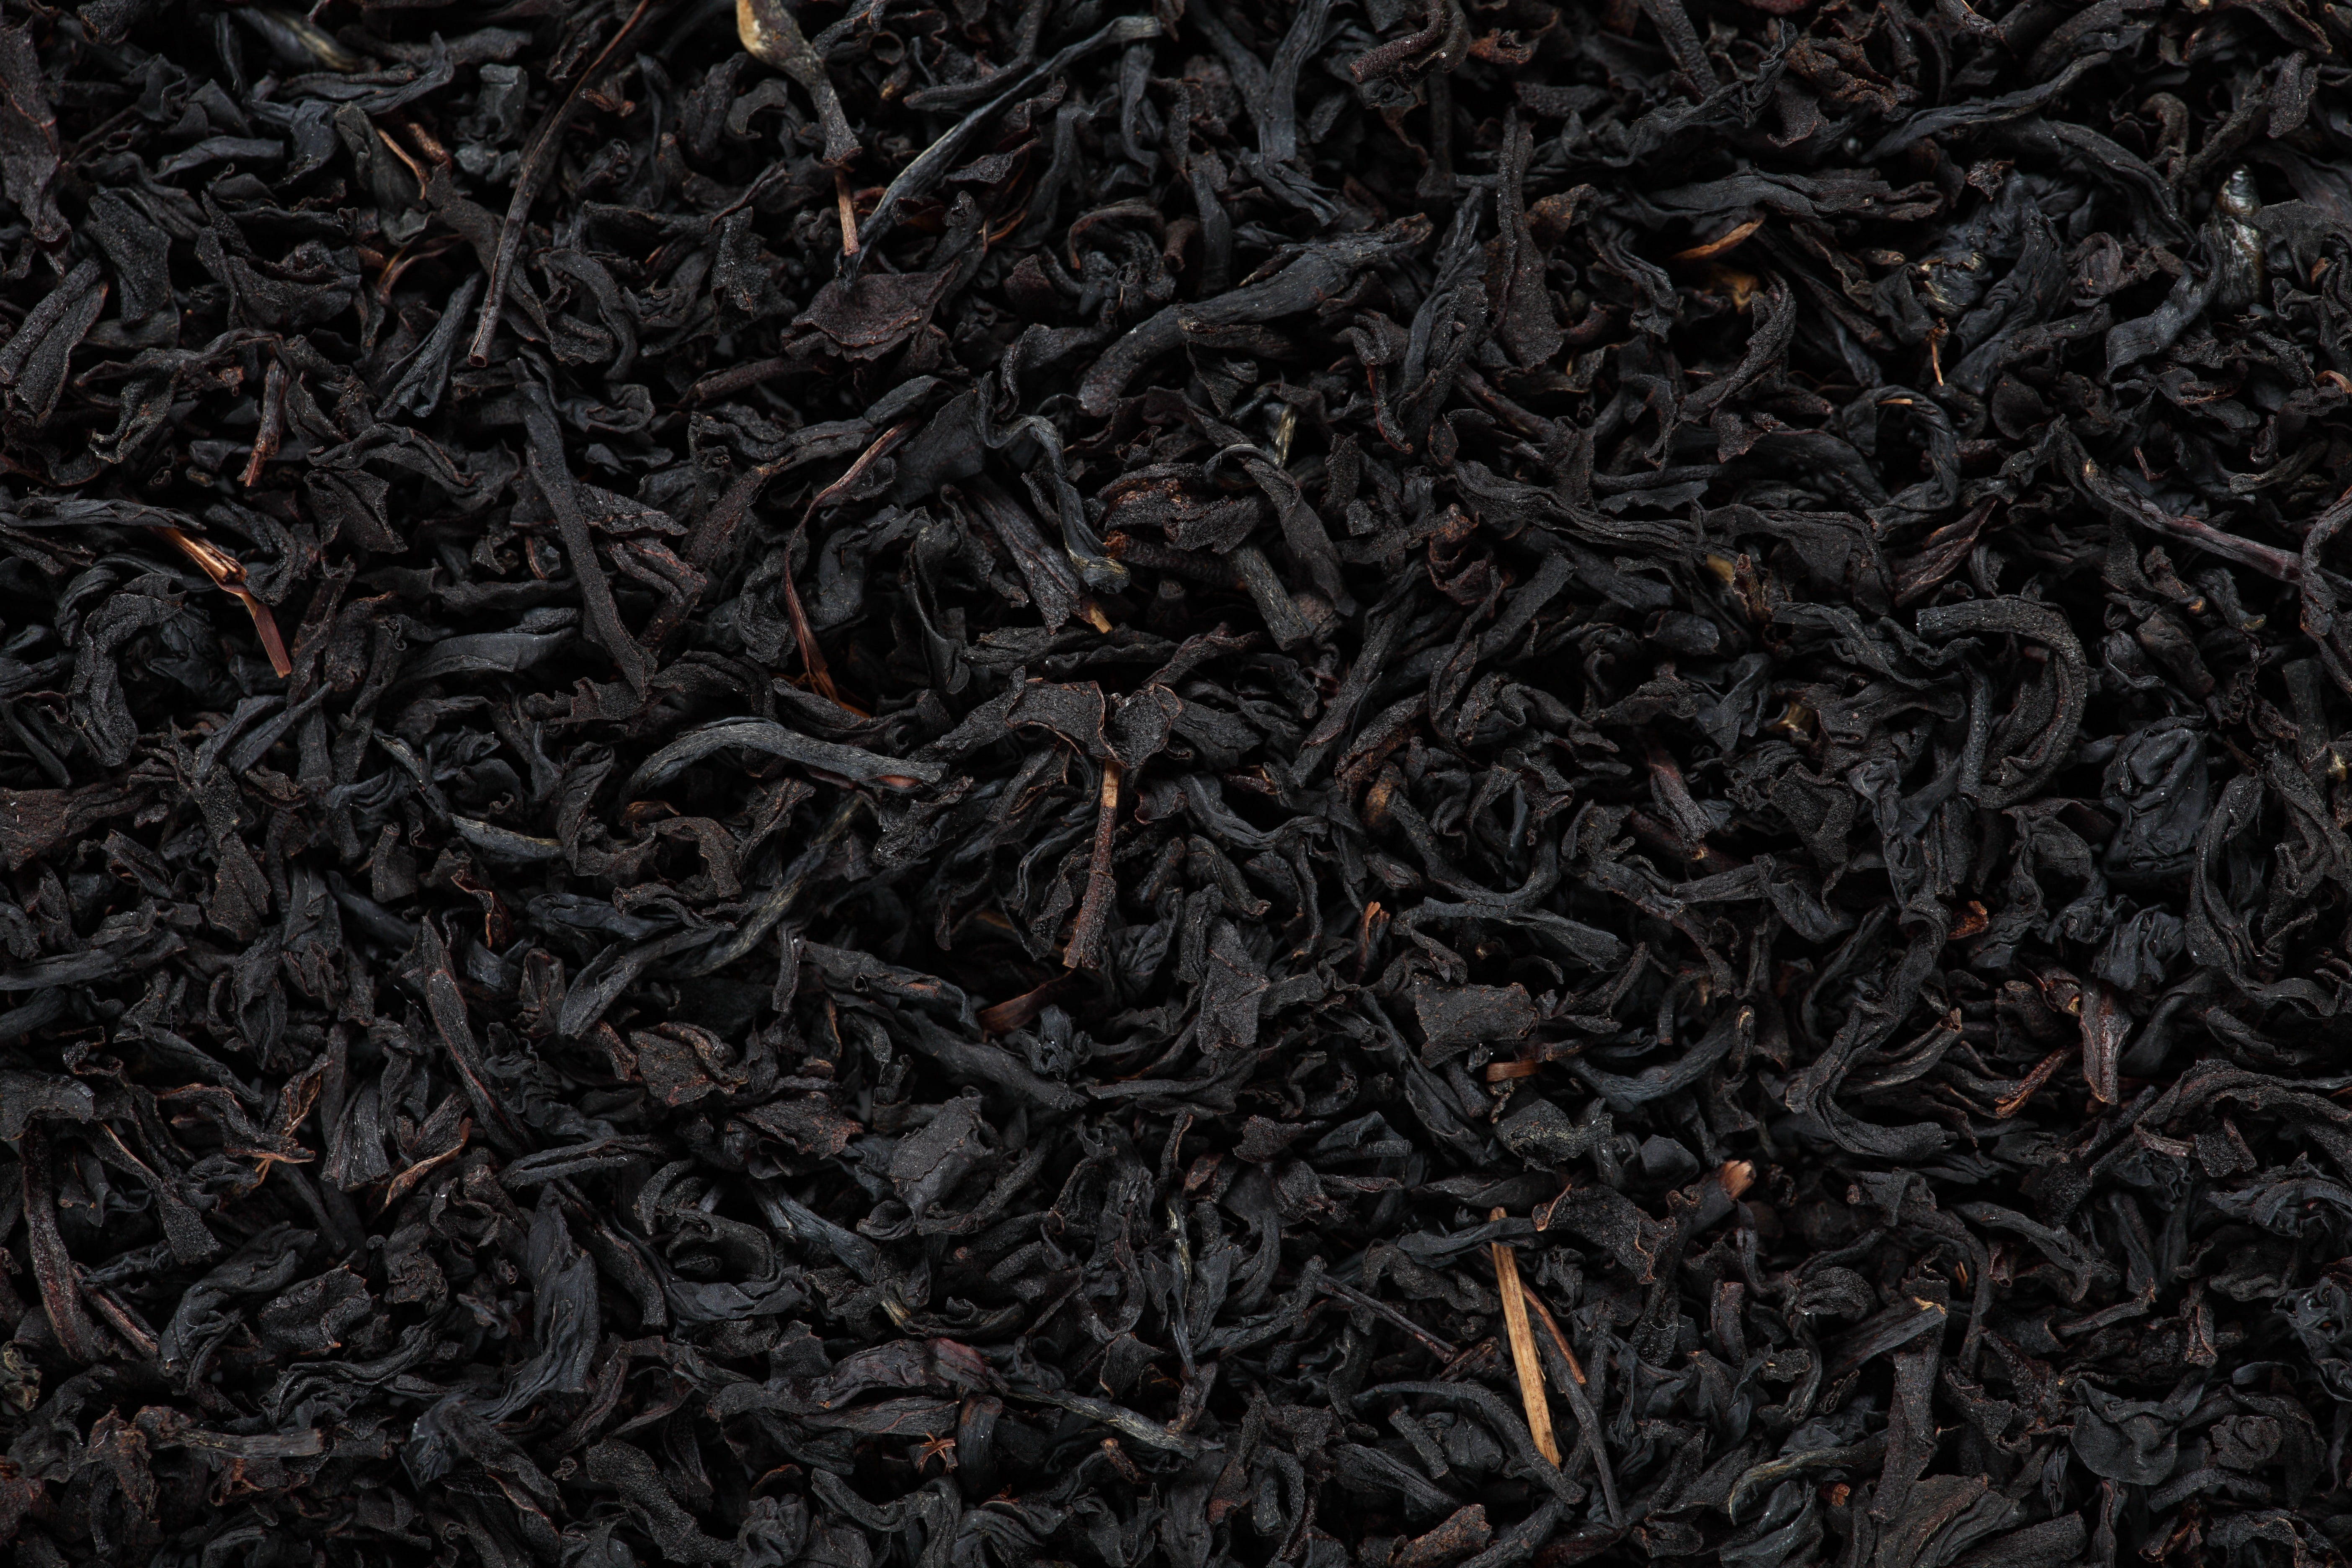 Close-up of loose leaf black tea